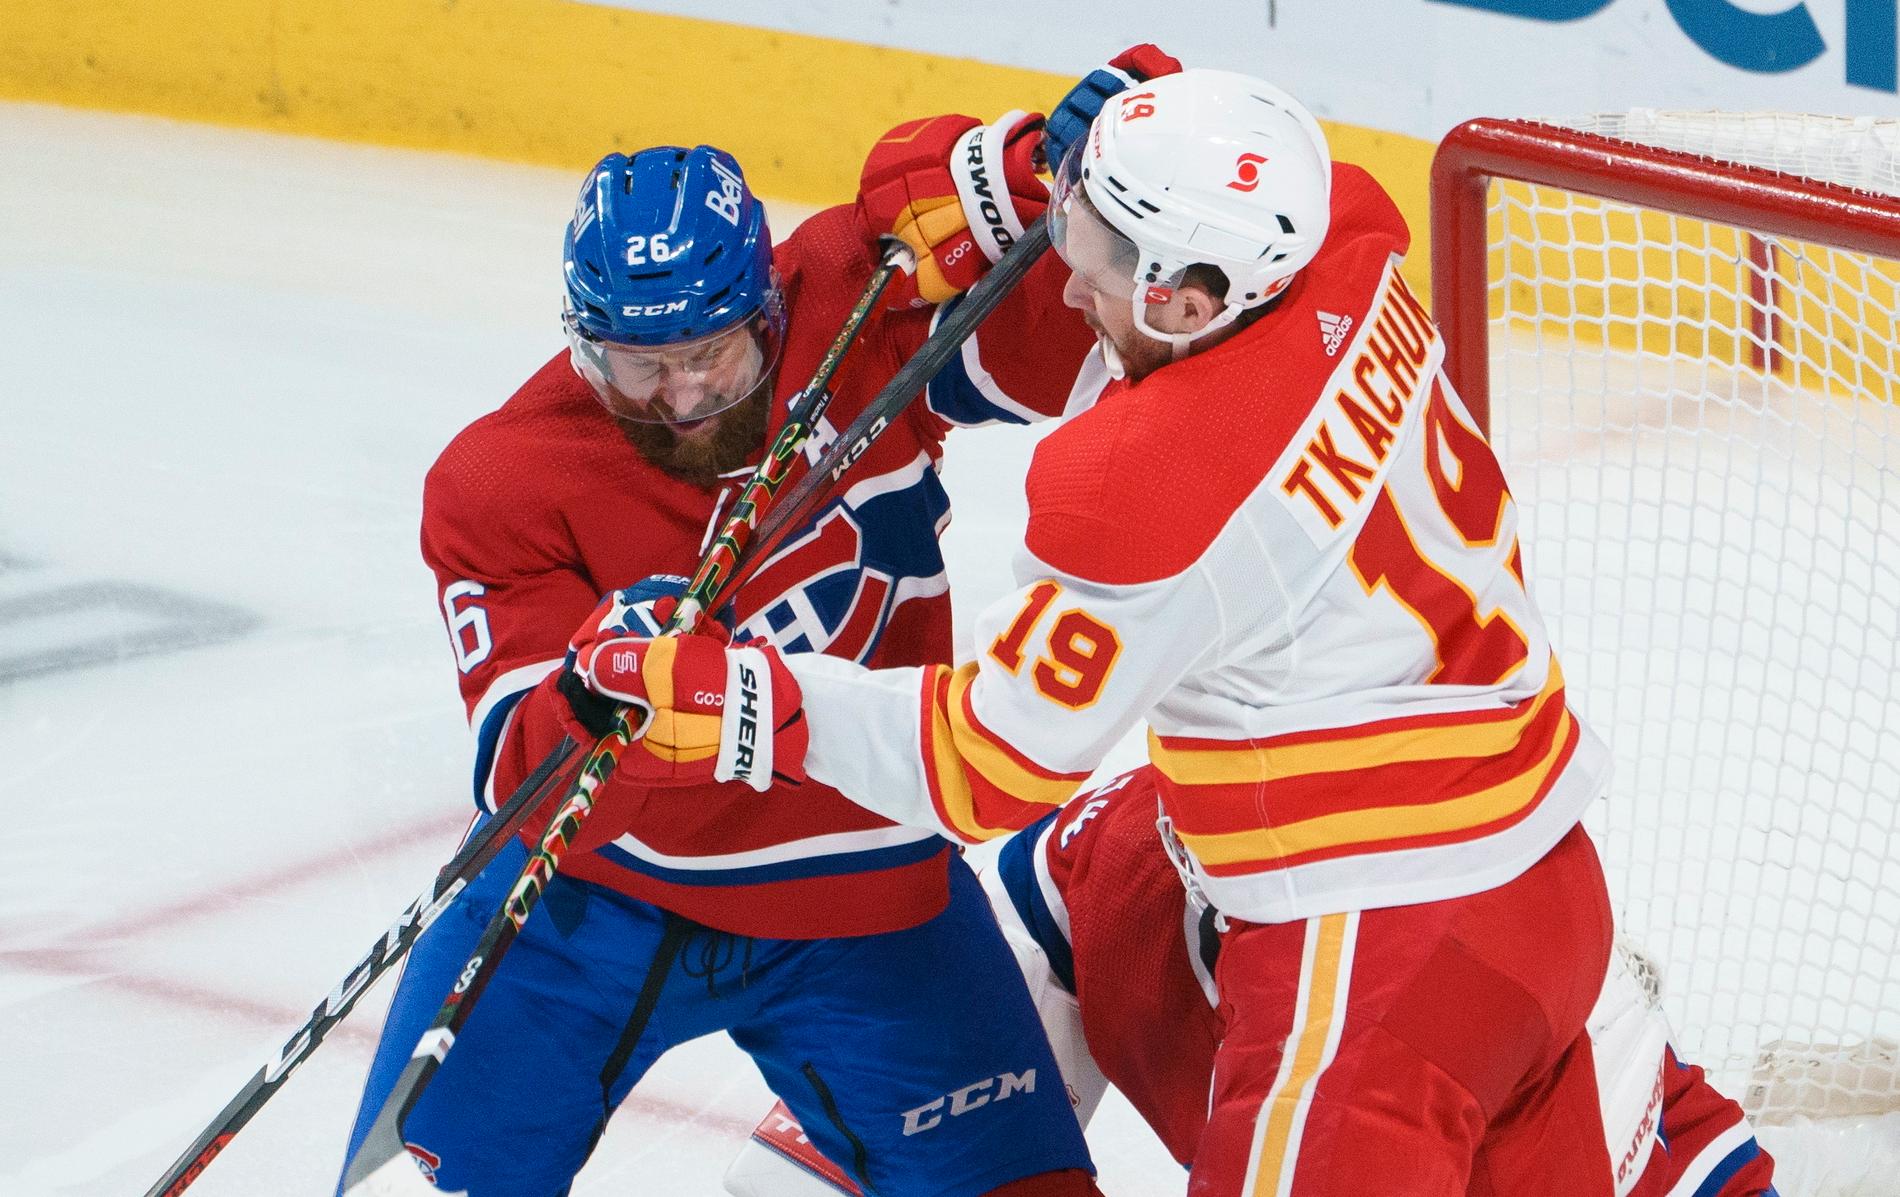 Montreals Jeff Petry och Calgarys Matthew Tkachuk illustrerar lagens kamp om en plats i NHL-slutspelet.